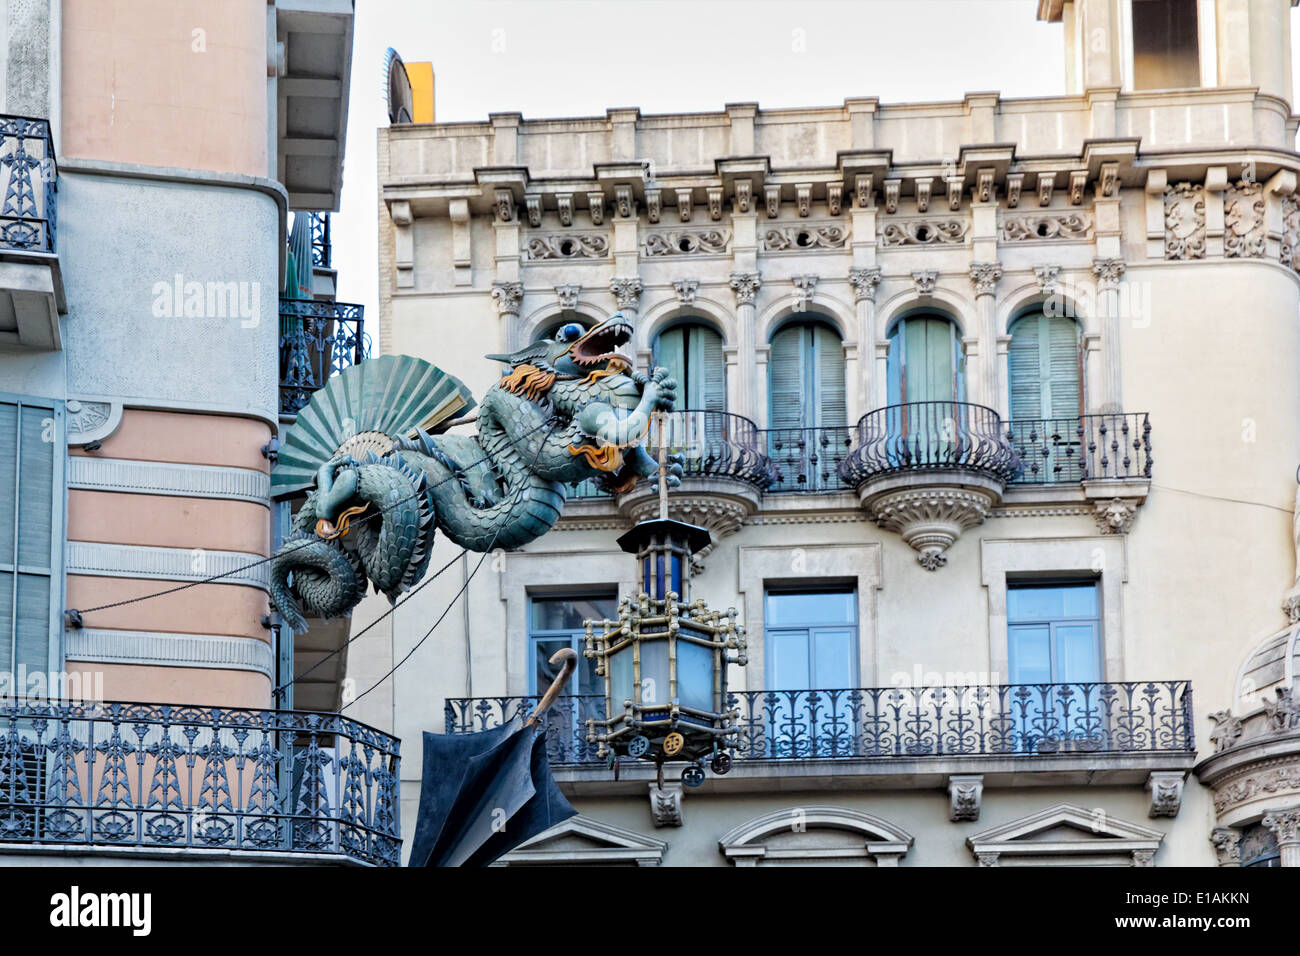 Chinesische Drachen Skulptur an den Wänden eines Hauses dekoriert mit Sonnenschirmen, Bruno Quadras Gebäude, Las Ramblas, Barcelona Stockfoto